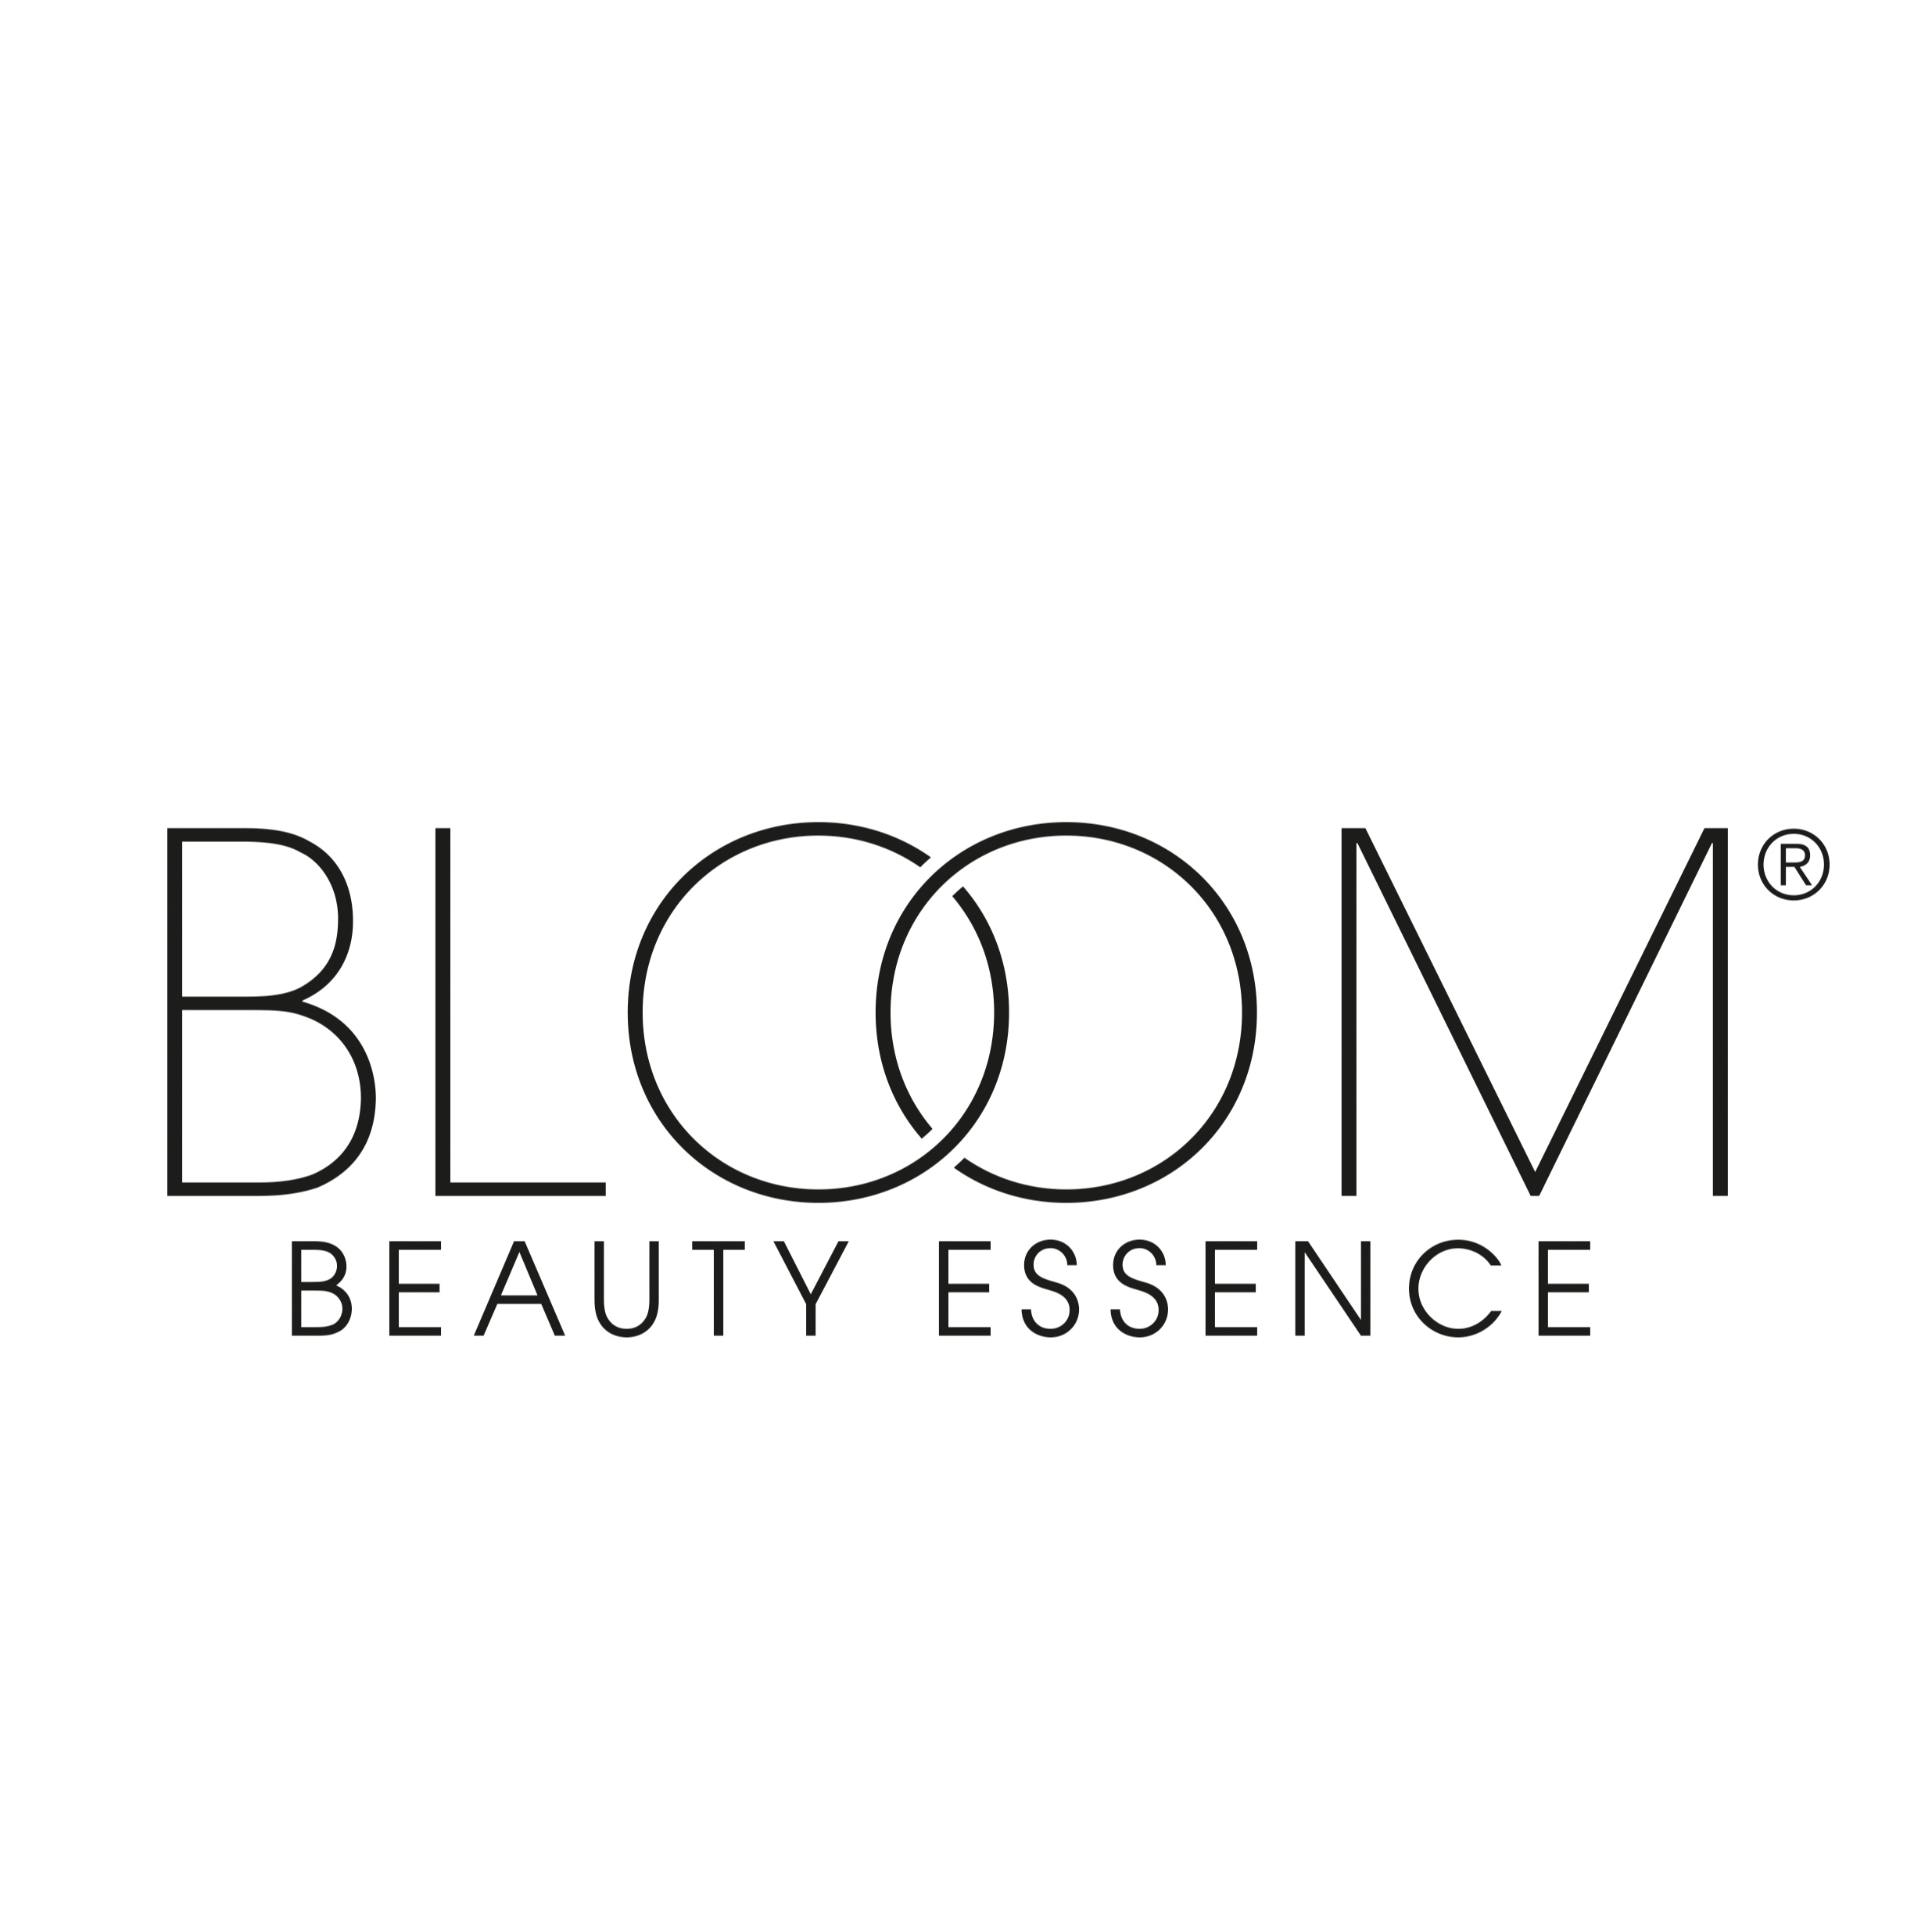 德国黑科技专利品牌Bloom Beauty寻找全国代理商